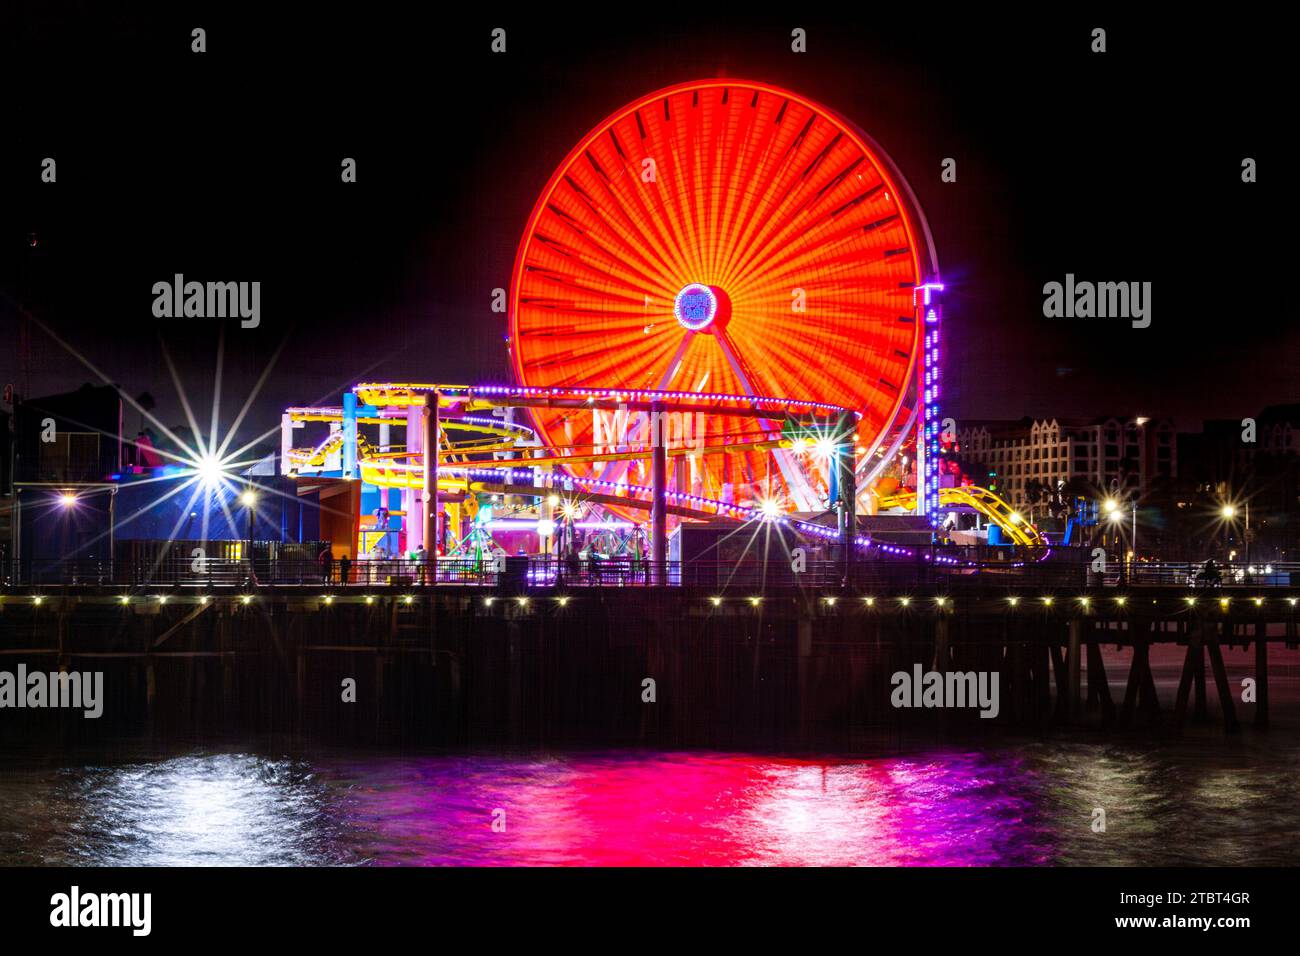 Pacific Park am Santa Monica Pier, Santa Monica, Kalifornien, mit dem Riesenrad und der Achterbahn, die bei Nacht im Ozean reflektiert wird Stockfoto